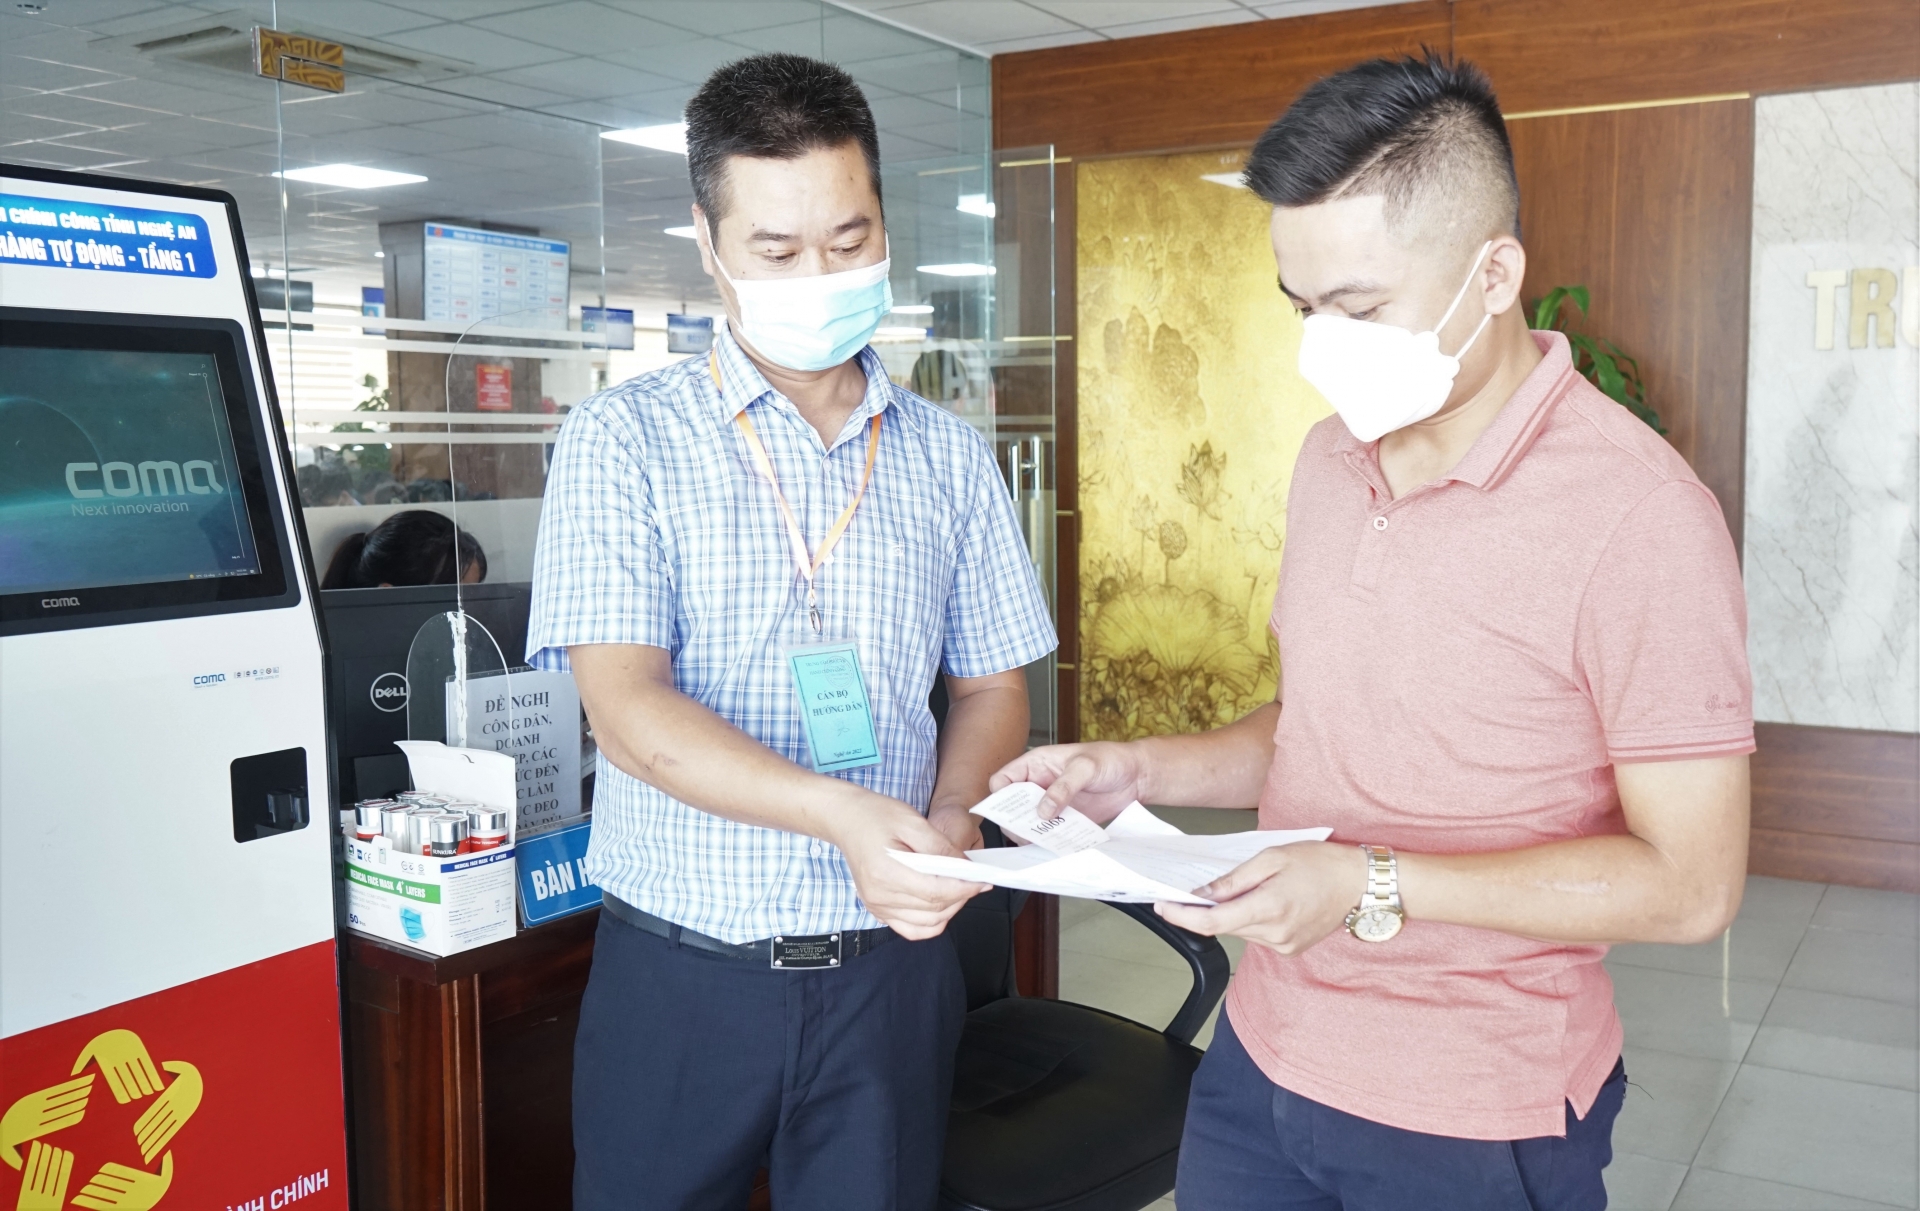 UBND tỉnh Nghệ An đánh giá cao kết quả hoạt động của Trung tâm Phục vụ hành chính công